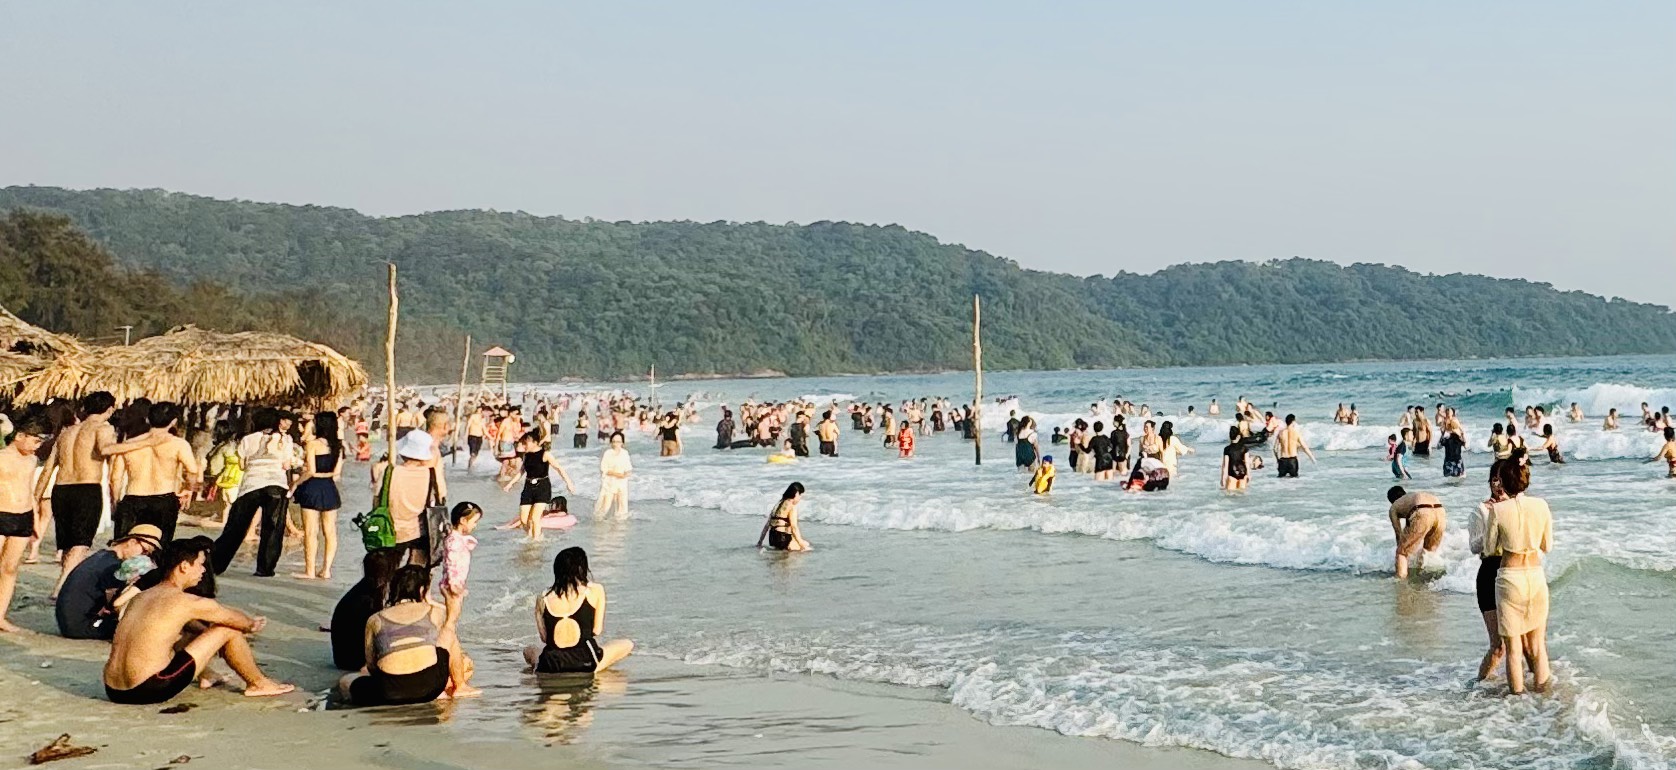 Du khách ken cứng trên bờ, bãi biển ở Quảng Ninh 2 ngày đầu dịp nghỉ lễ- Ảnh 1.